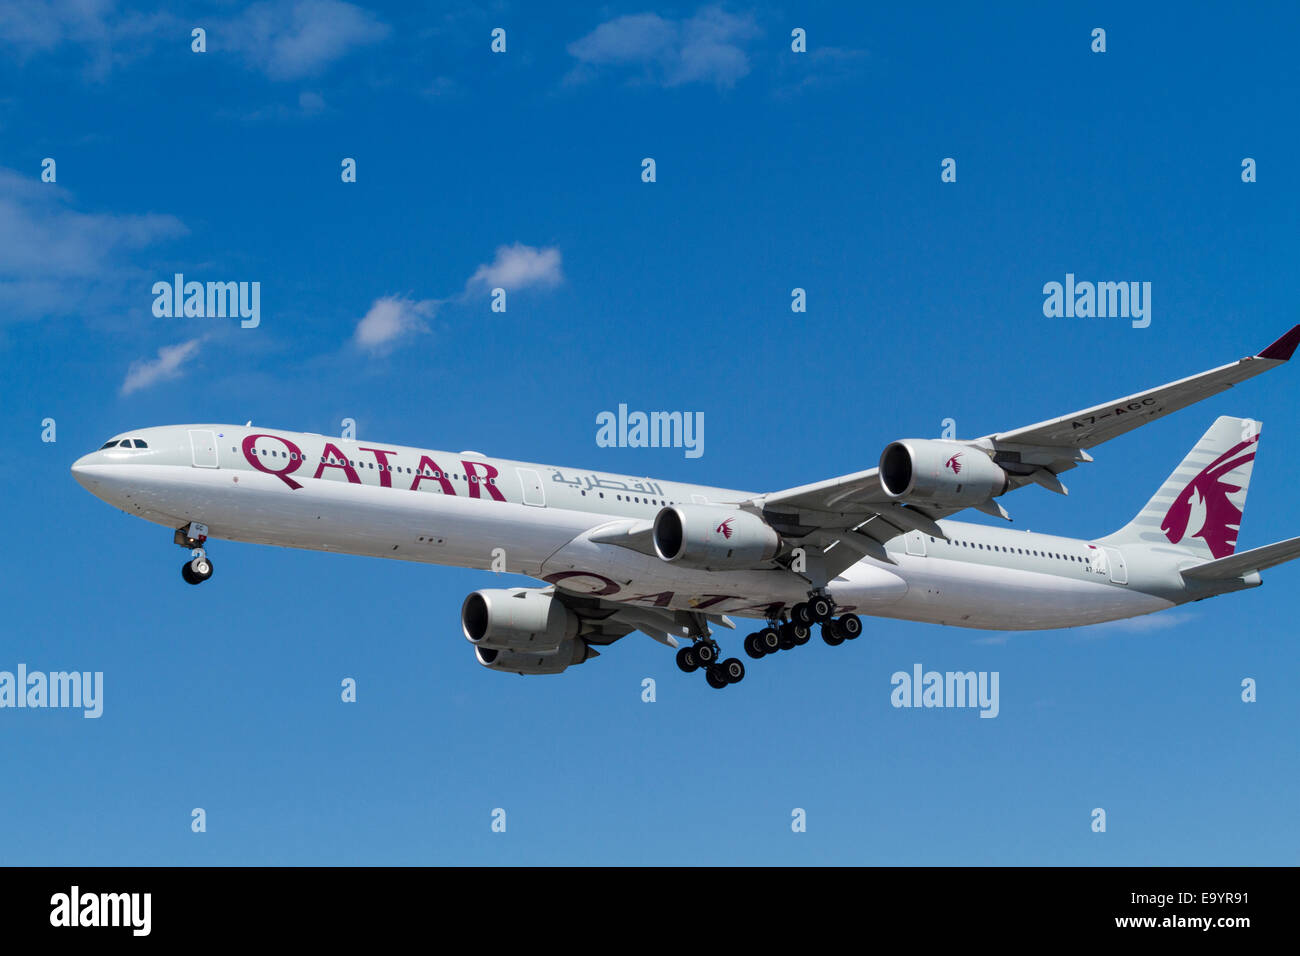 Qatar Airways Airbus A340 Flugzeug, A7-ACG, auf seinen Ansatz für die Landung in London Heathrow, England, Großbritannien Stockfoto